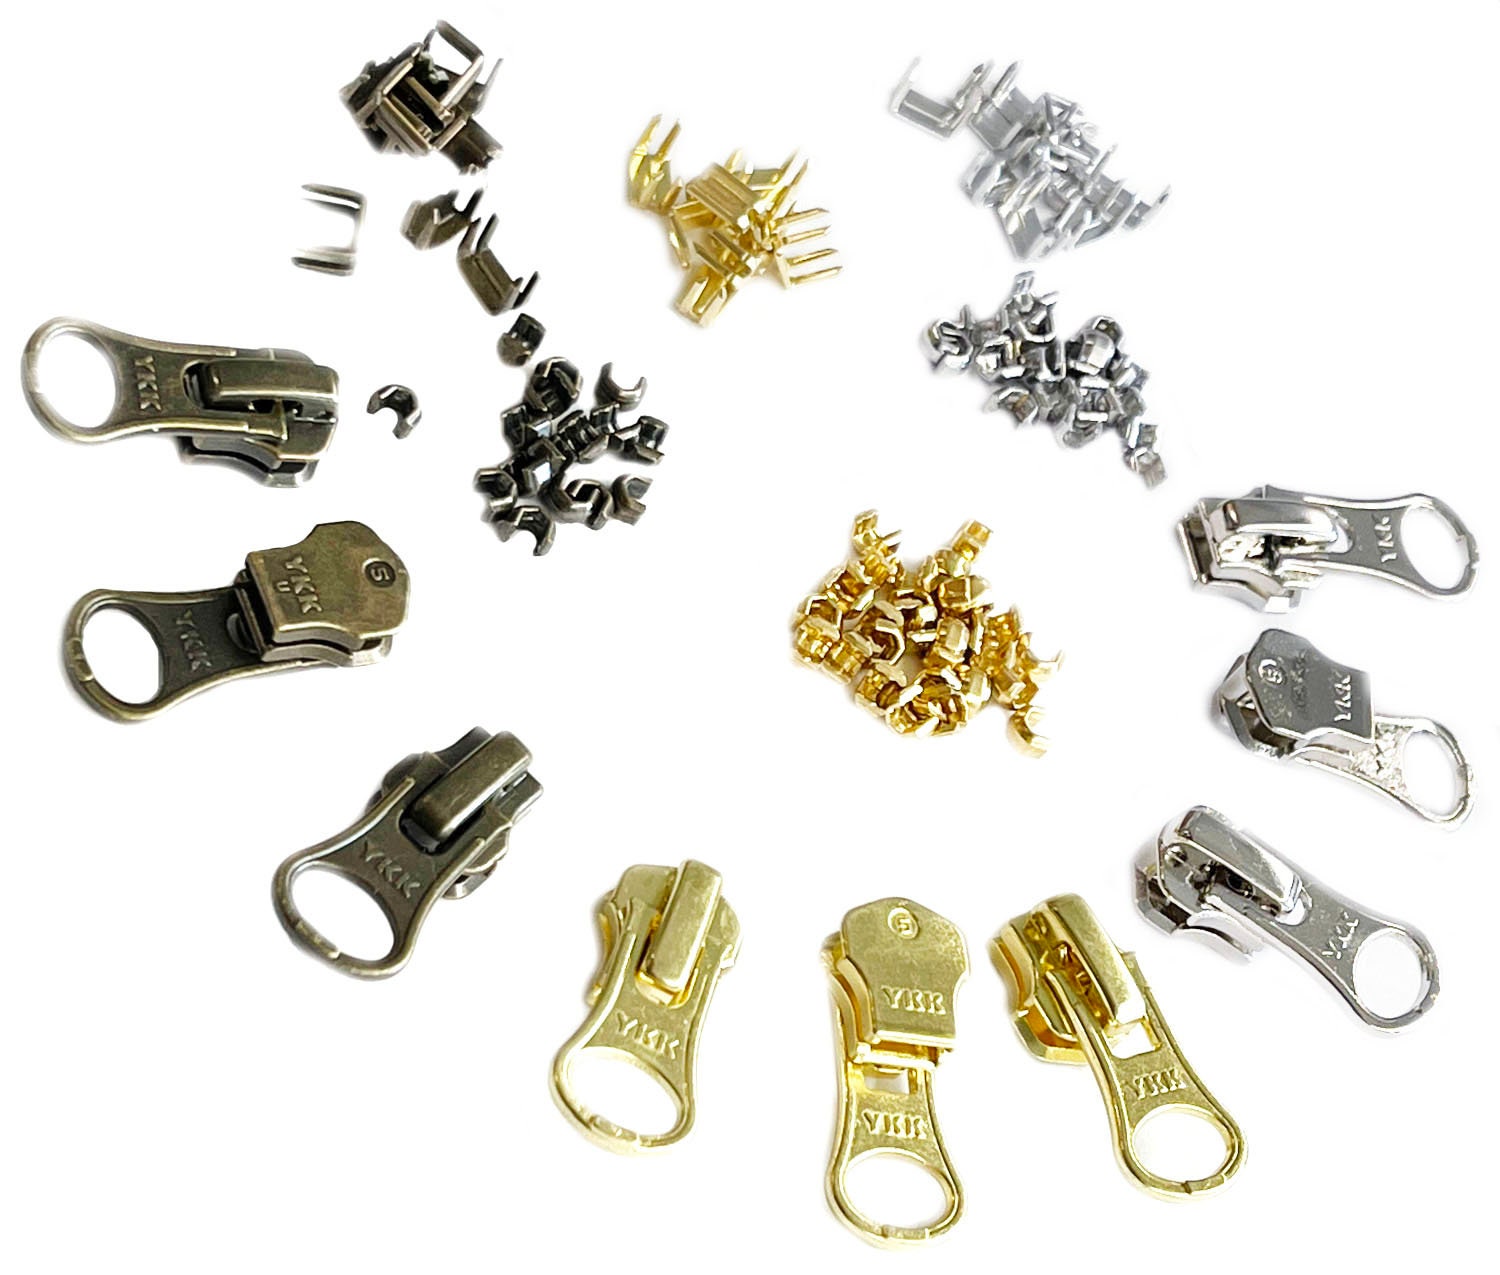 Zipperstop Distributor YKK Zipper Repair Solution YKK #10 Antique Brass (1 Slider/Pack)